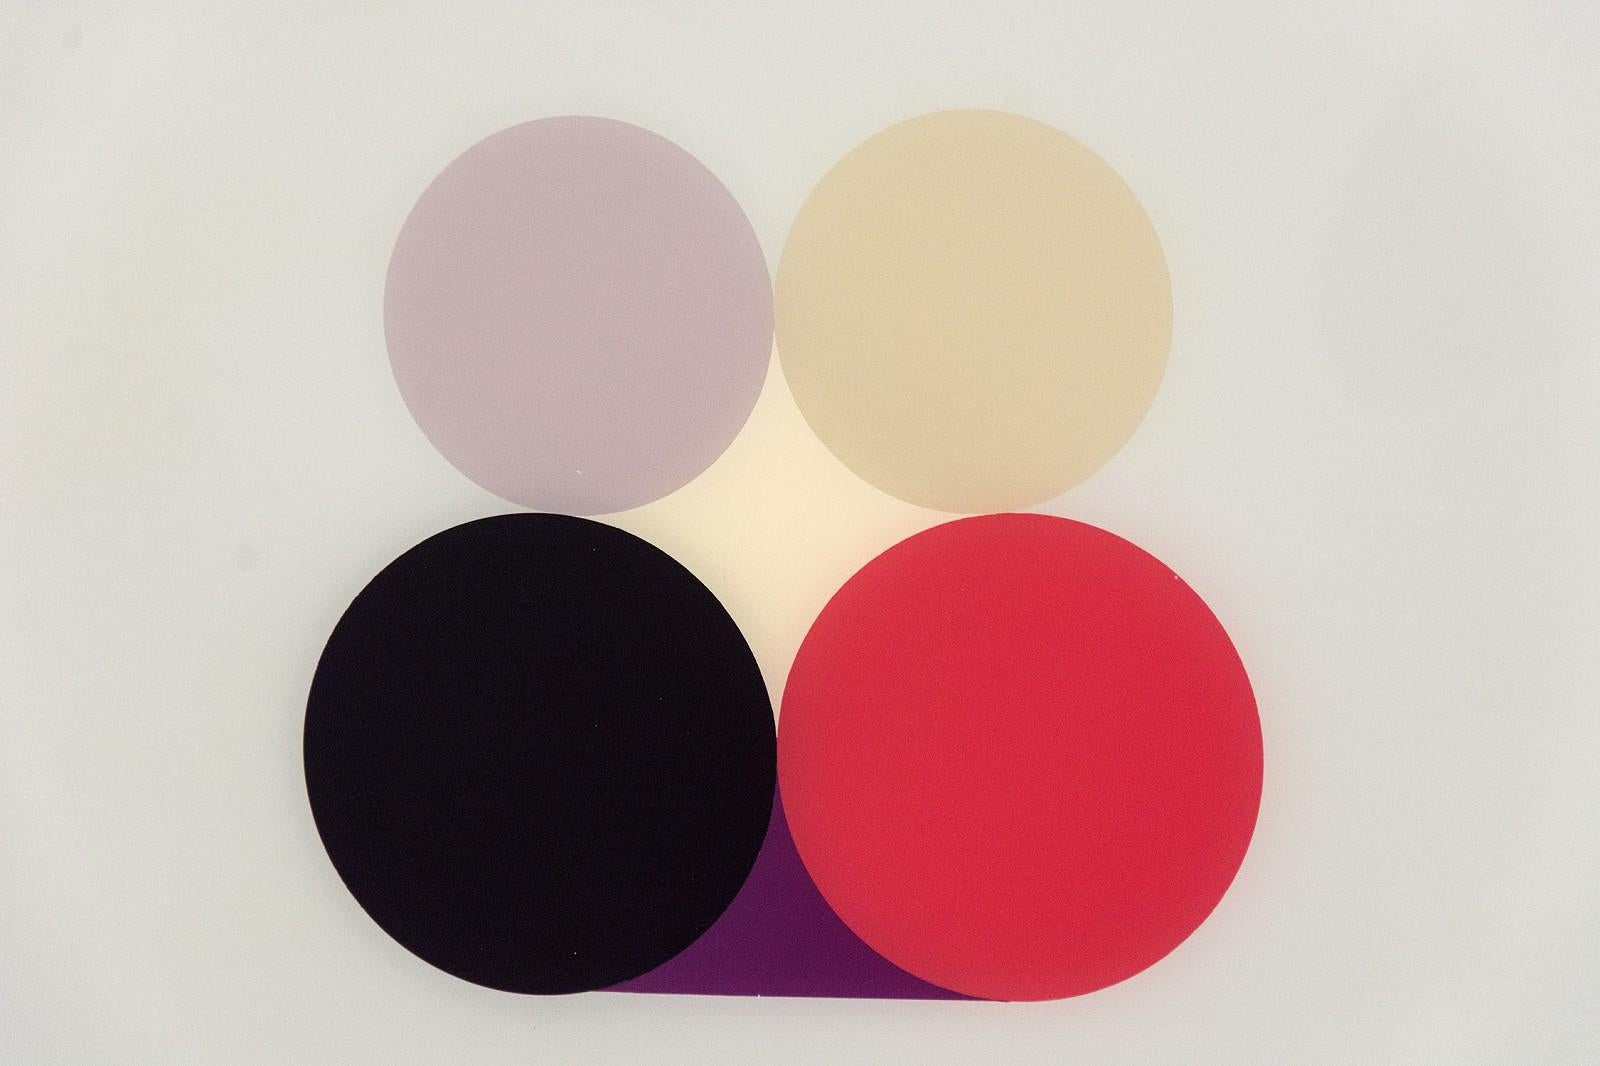 Life Still violette 3 - lumineuse, géométrique et minimaliste, acrylique sur plexiglas - Painting de David Cantine